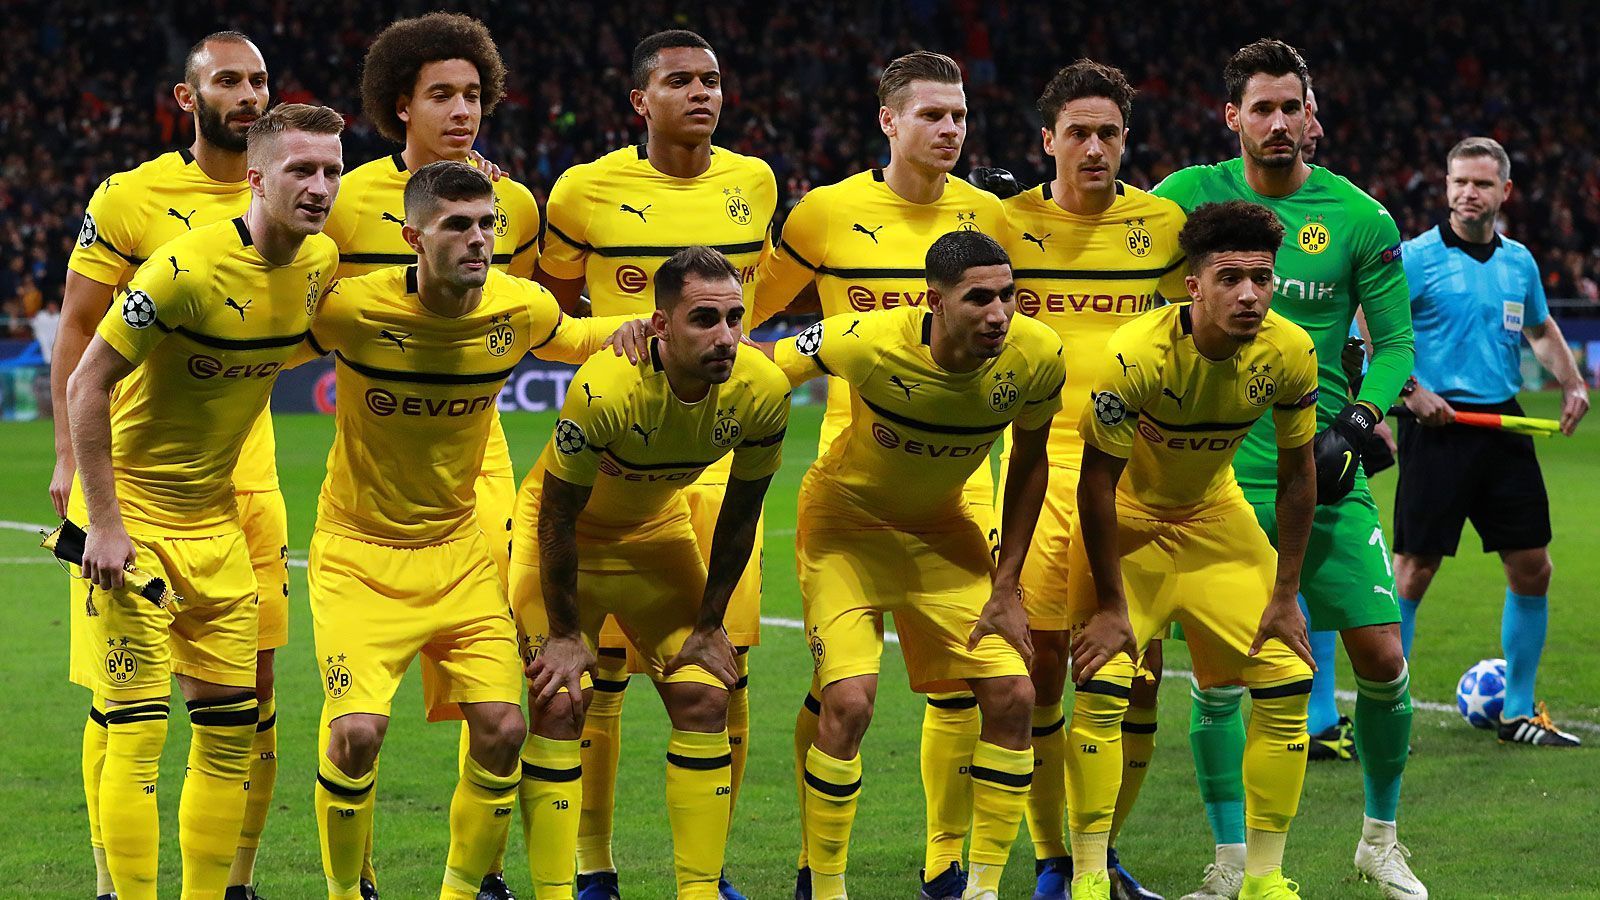 
                <strong>Champions League: BVB bei Atletico Madrid in der Einzelkritik</strong><br>
                Borussia Dortmund hat nach einer schwachen Vorstellung am vierten Spieltag der Champions-League-Gruppenphase bei Atletico Madrid beim 0:2 die ersten Gegentore und die erste Niederlage kassiert. Wir haben den BVB benotet.
              